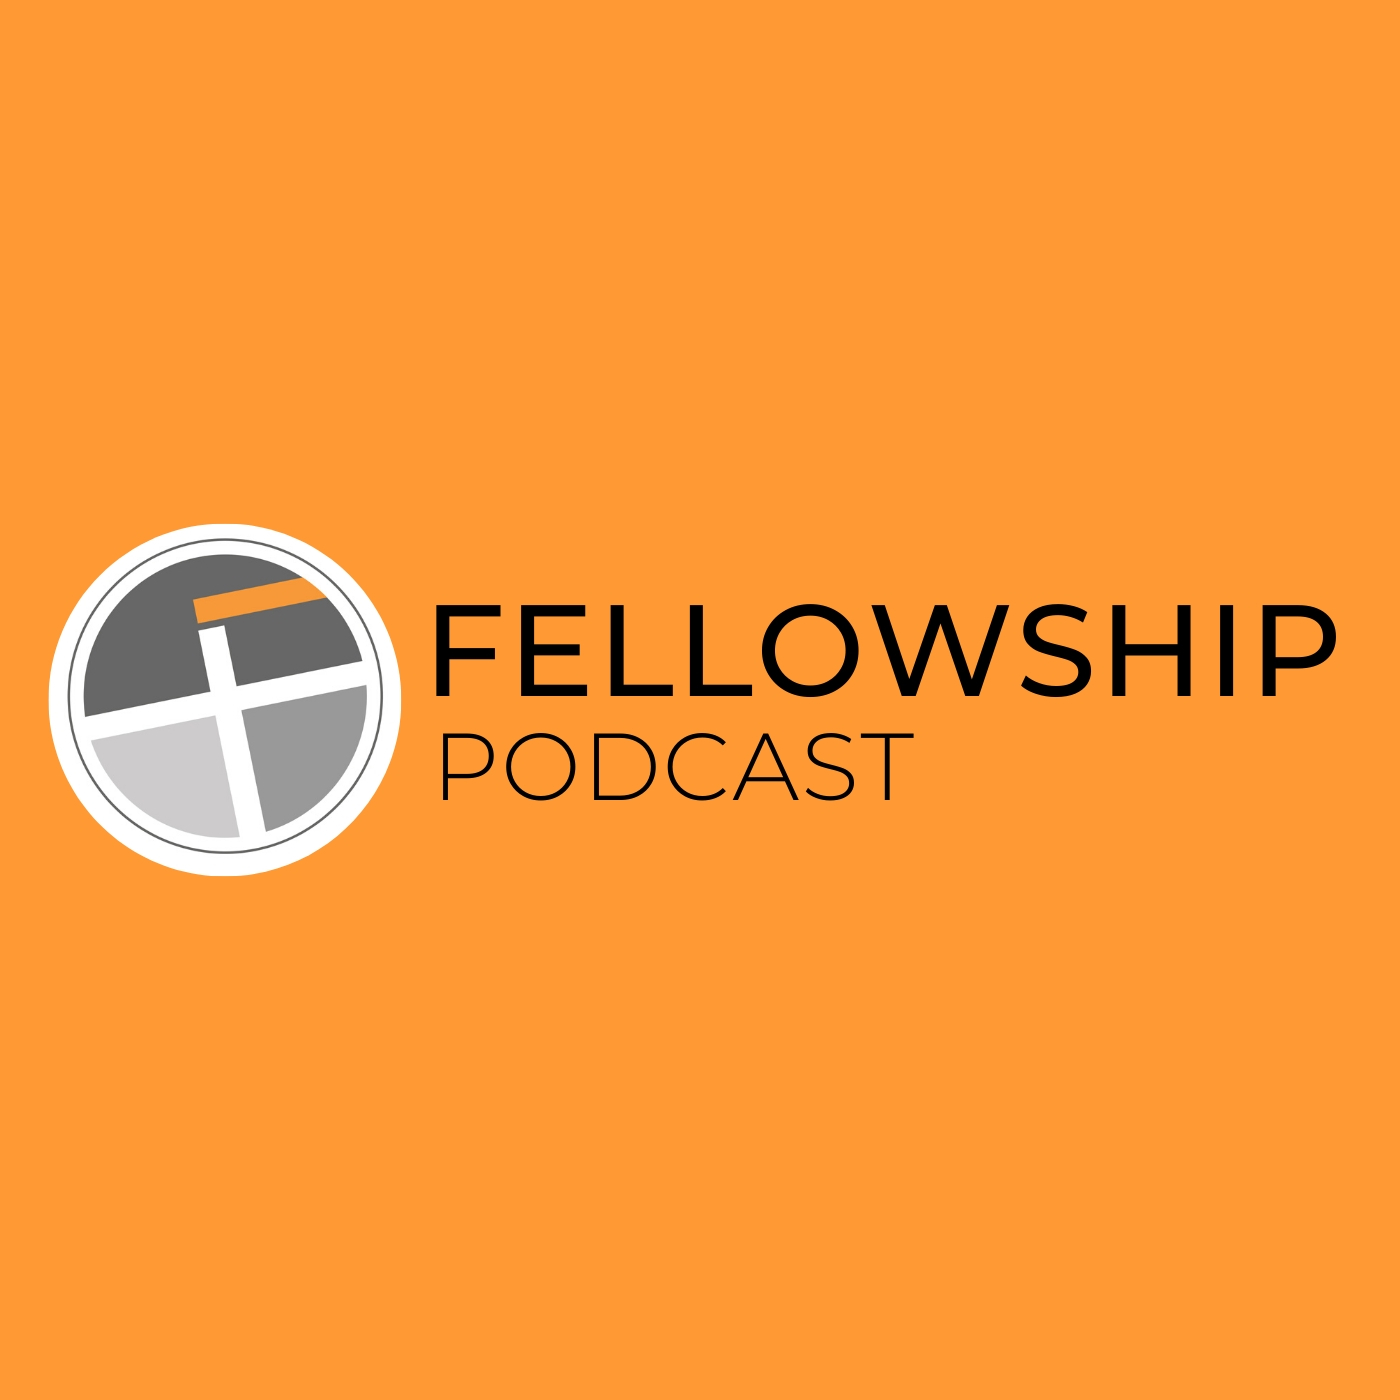 Fellowship Church Podcast